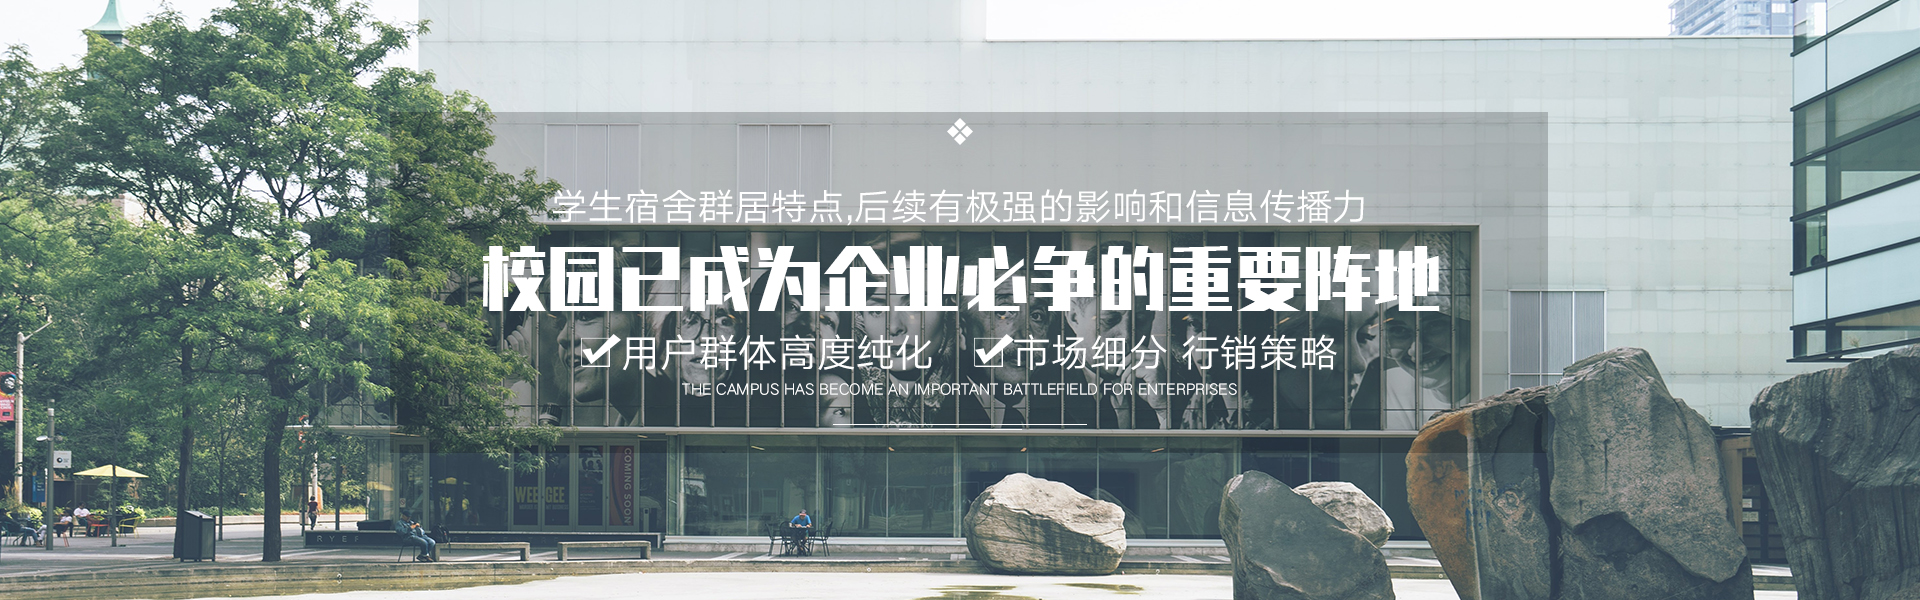 “多元“非遗”聚于百年建筑外国留学生“触摸”中华千年文化